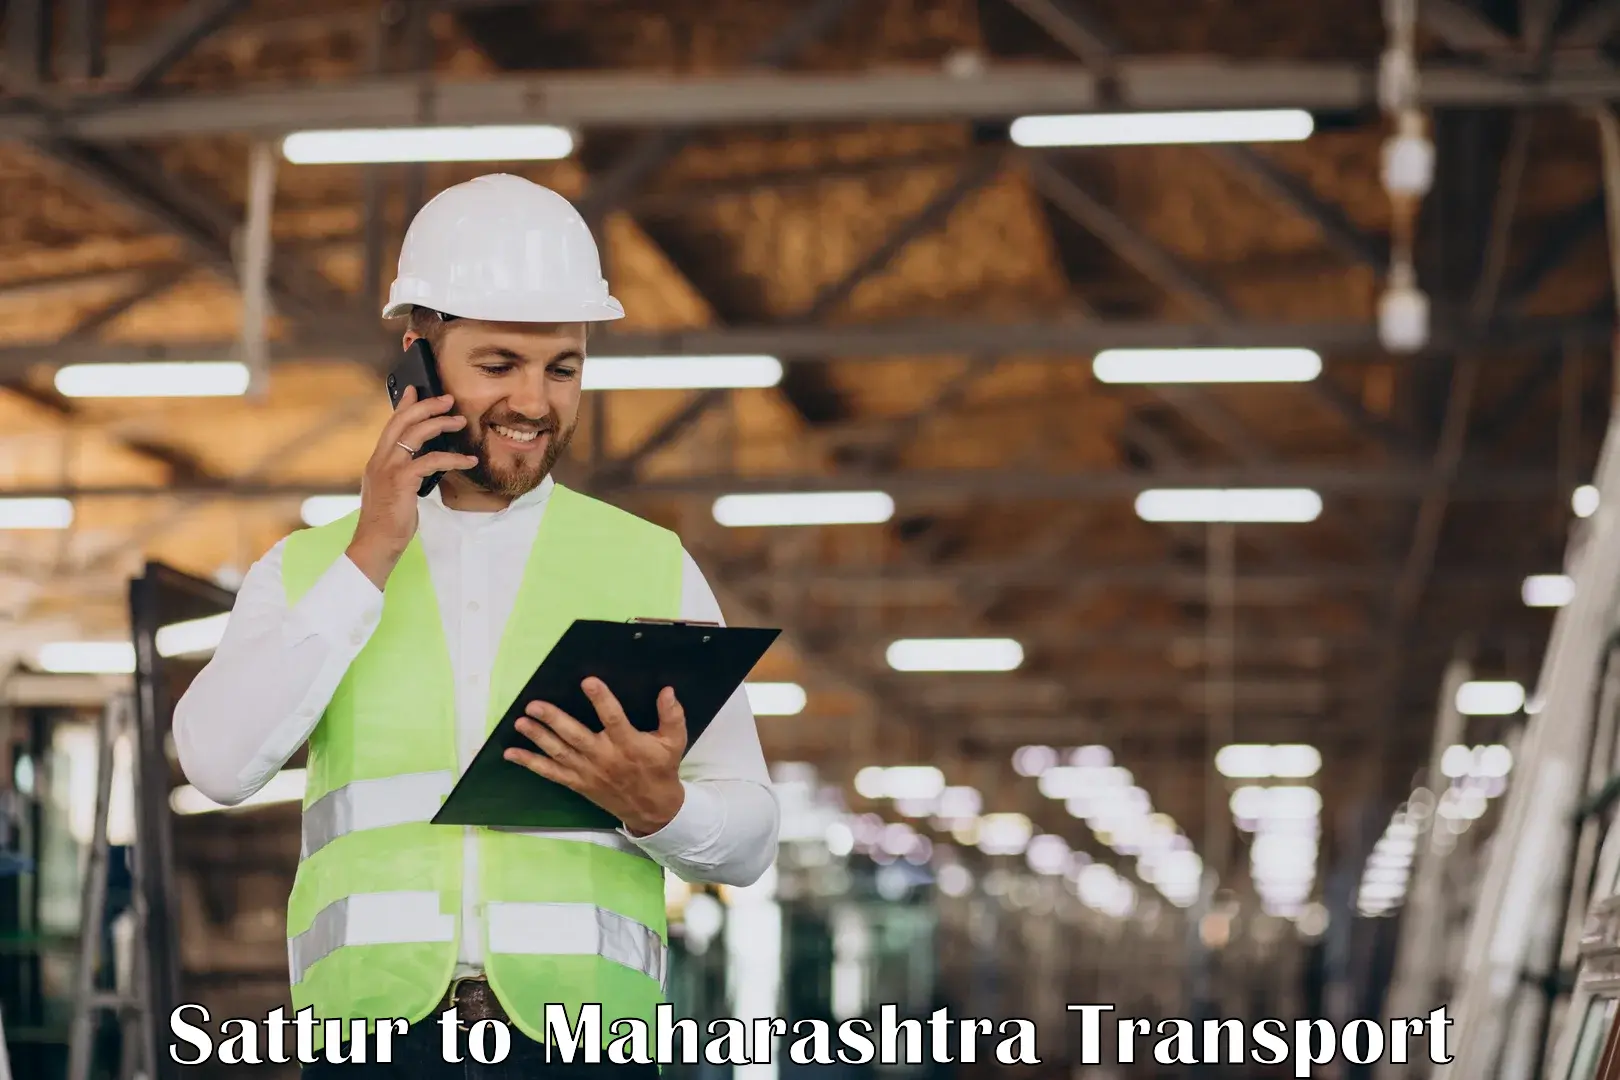 Air cargo transport services Sattur to Walchandnagar